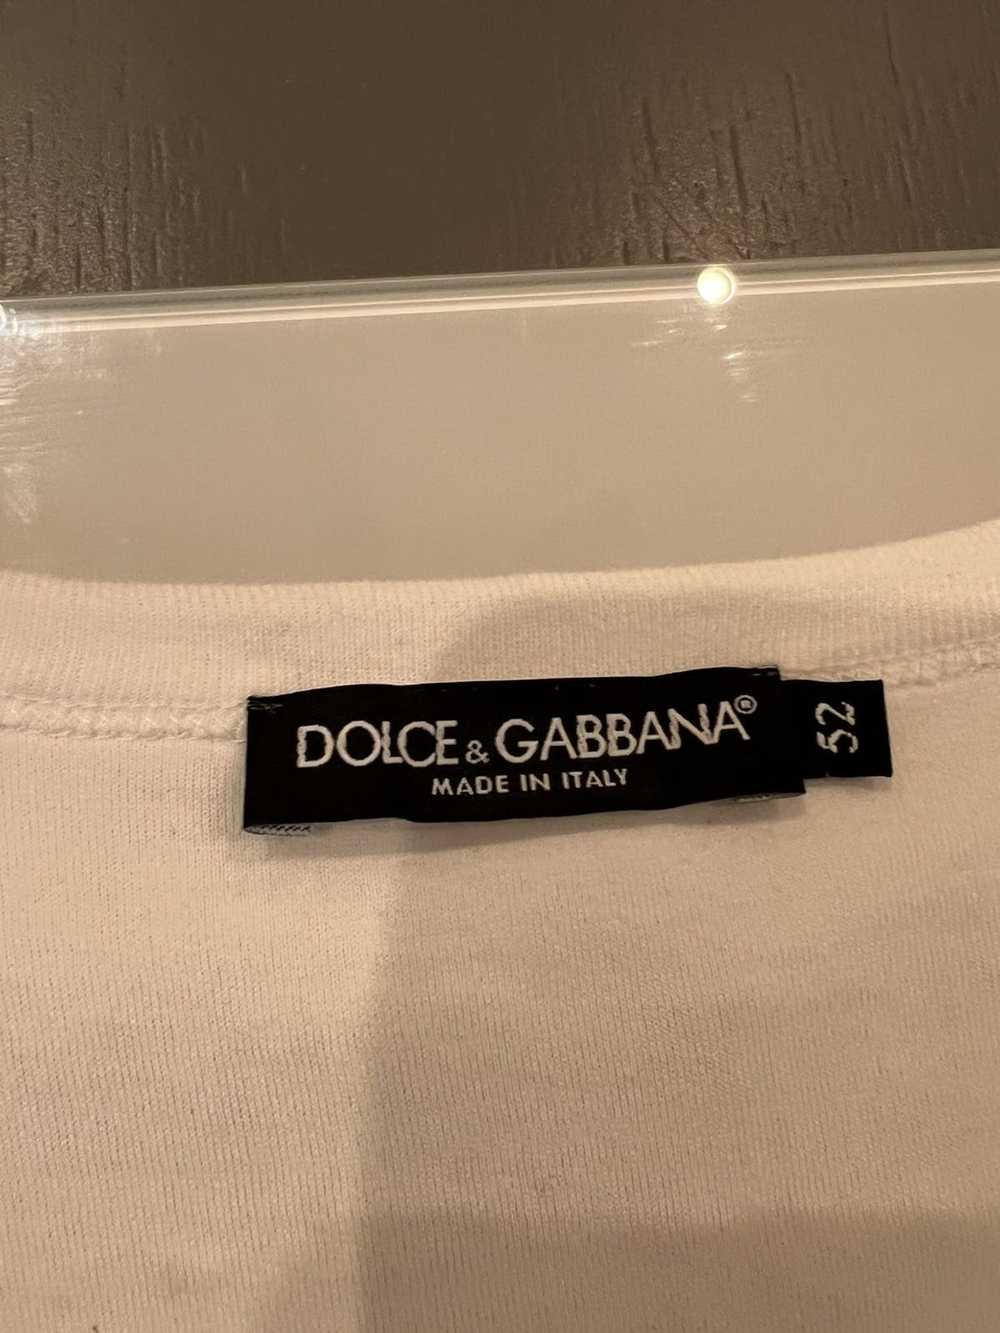 Dolce & Gabbana Dolce & Gabbana - image 3